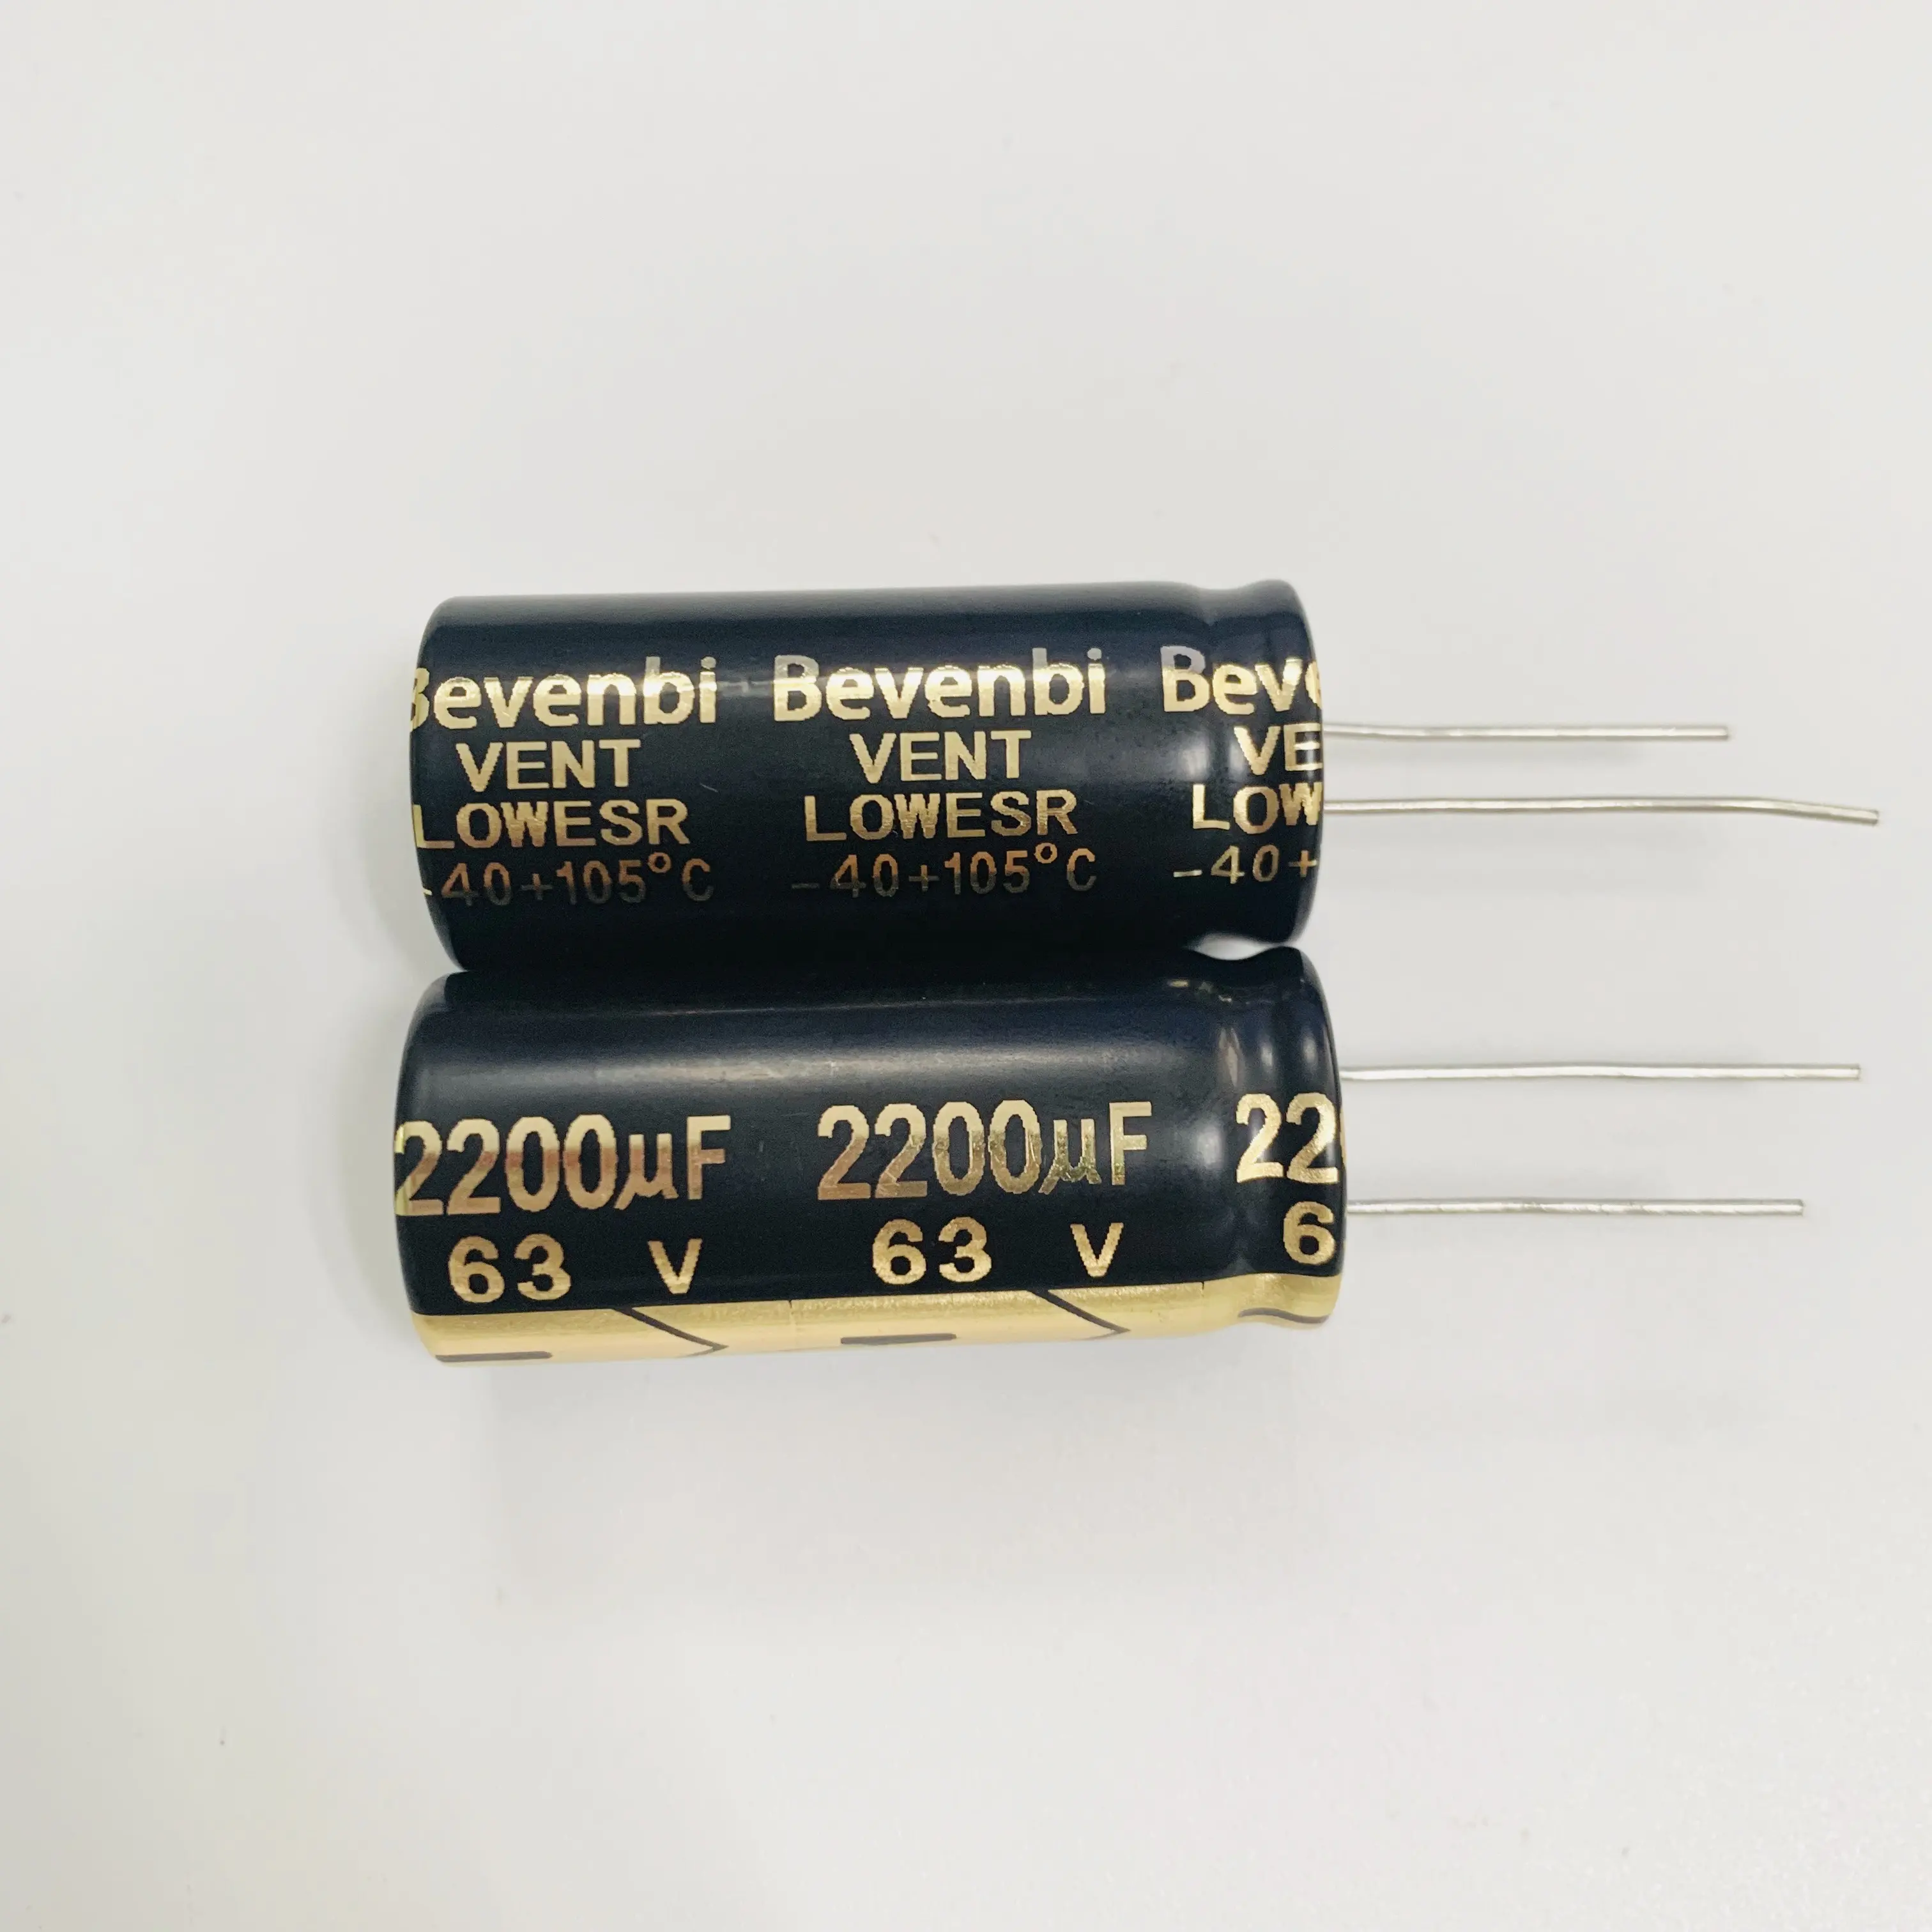 Bevenbi-condensador electrótico, herramienta radial polar de alto rendimiento